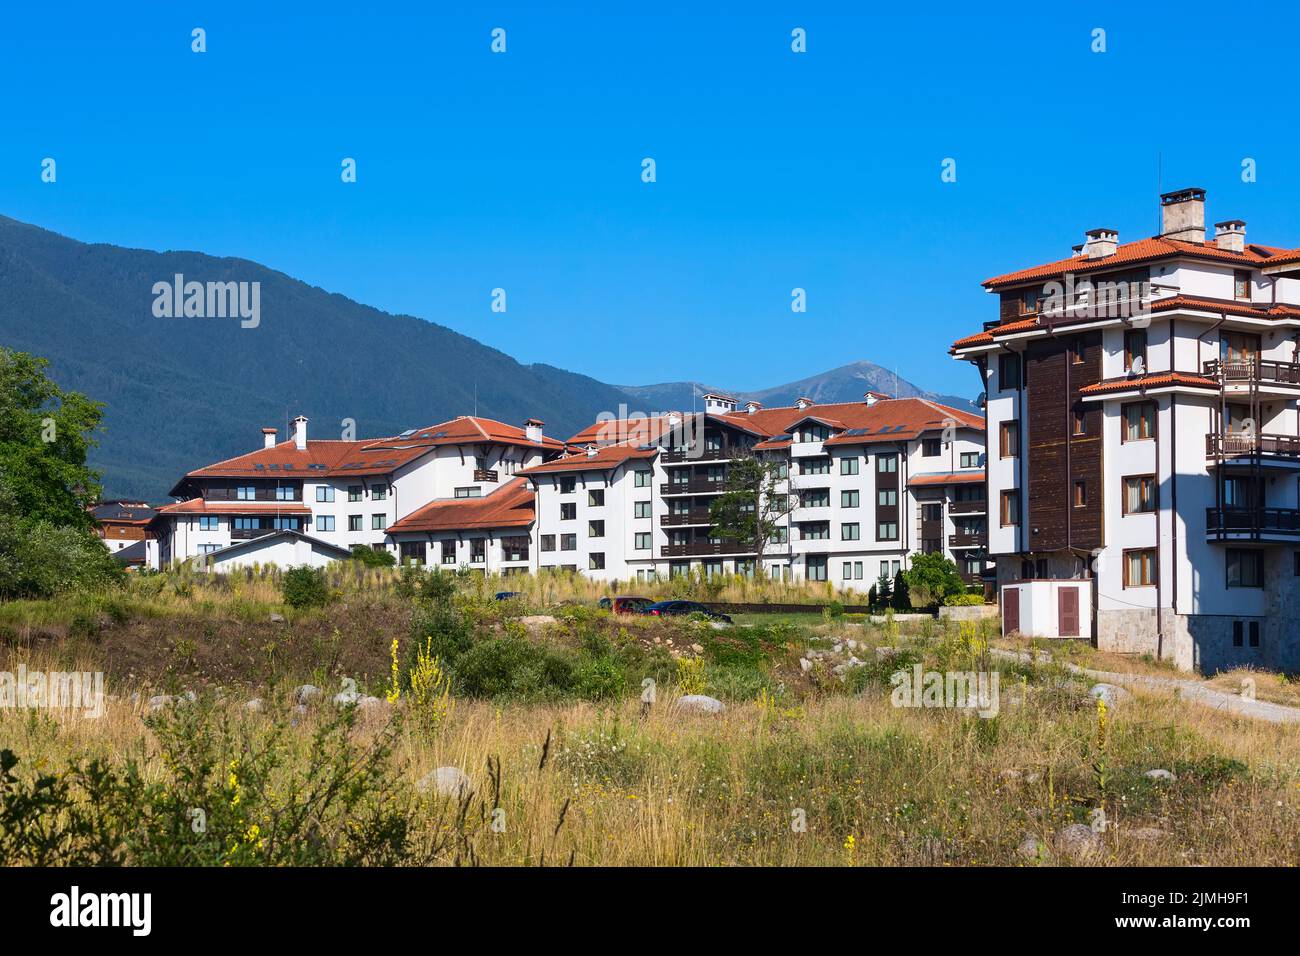 Chalet en bois maisons d'hôtel et montagnes d'été panorama dans la station de ski bulgare Bansko, Bulgarie Banque D'Images